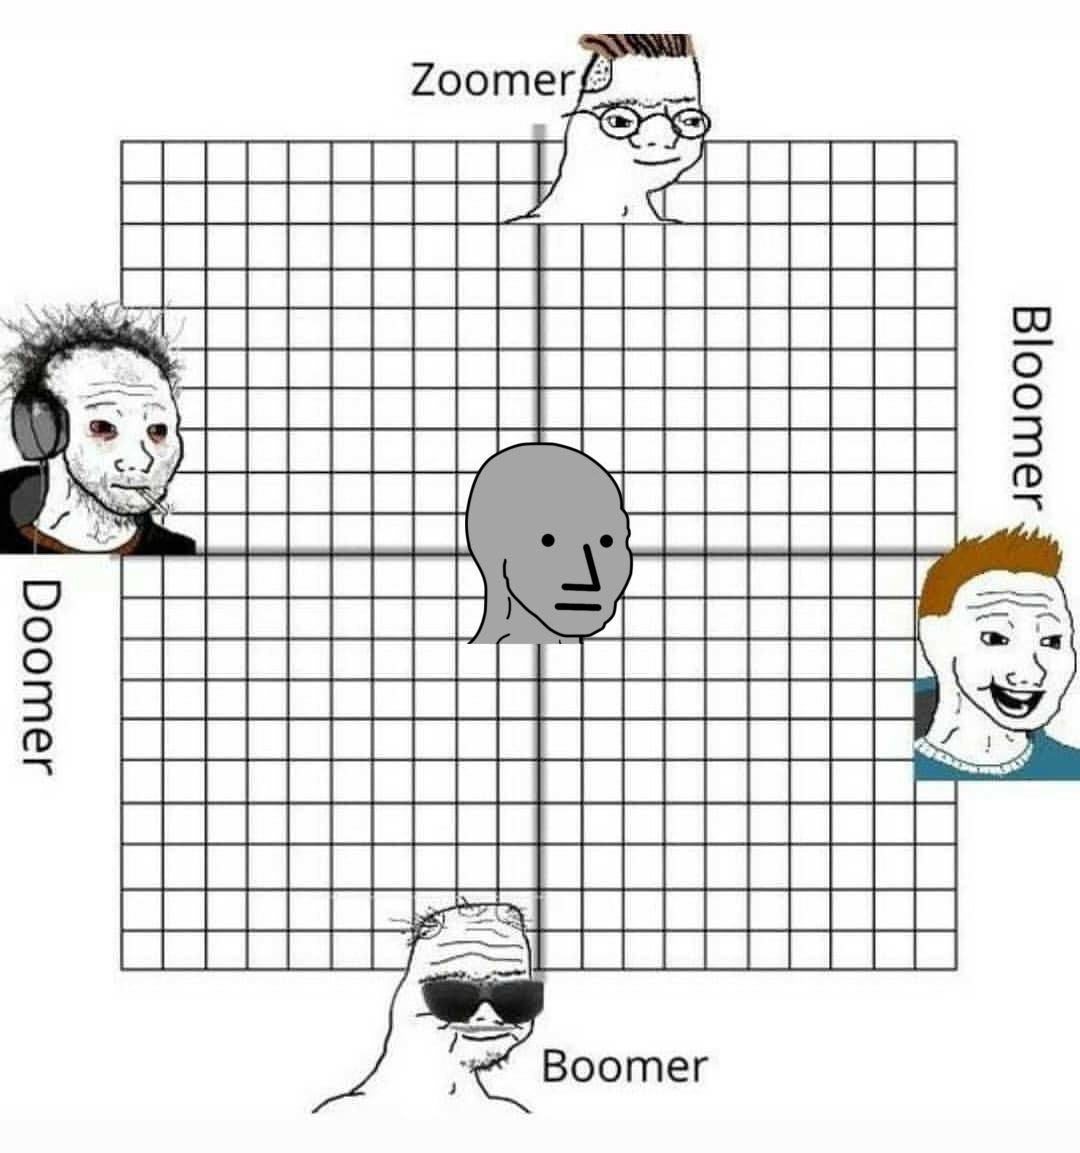 Doomer é um dos termos usados pela Geração Z, que significa estar